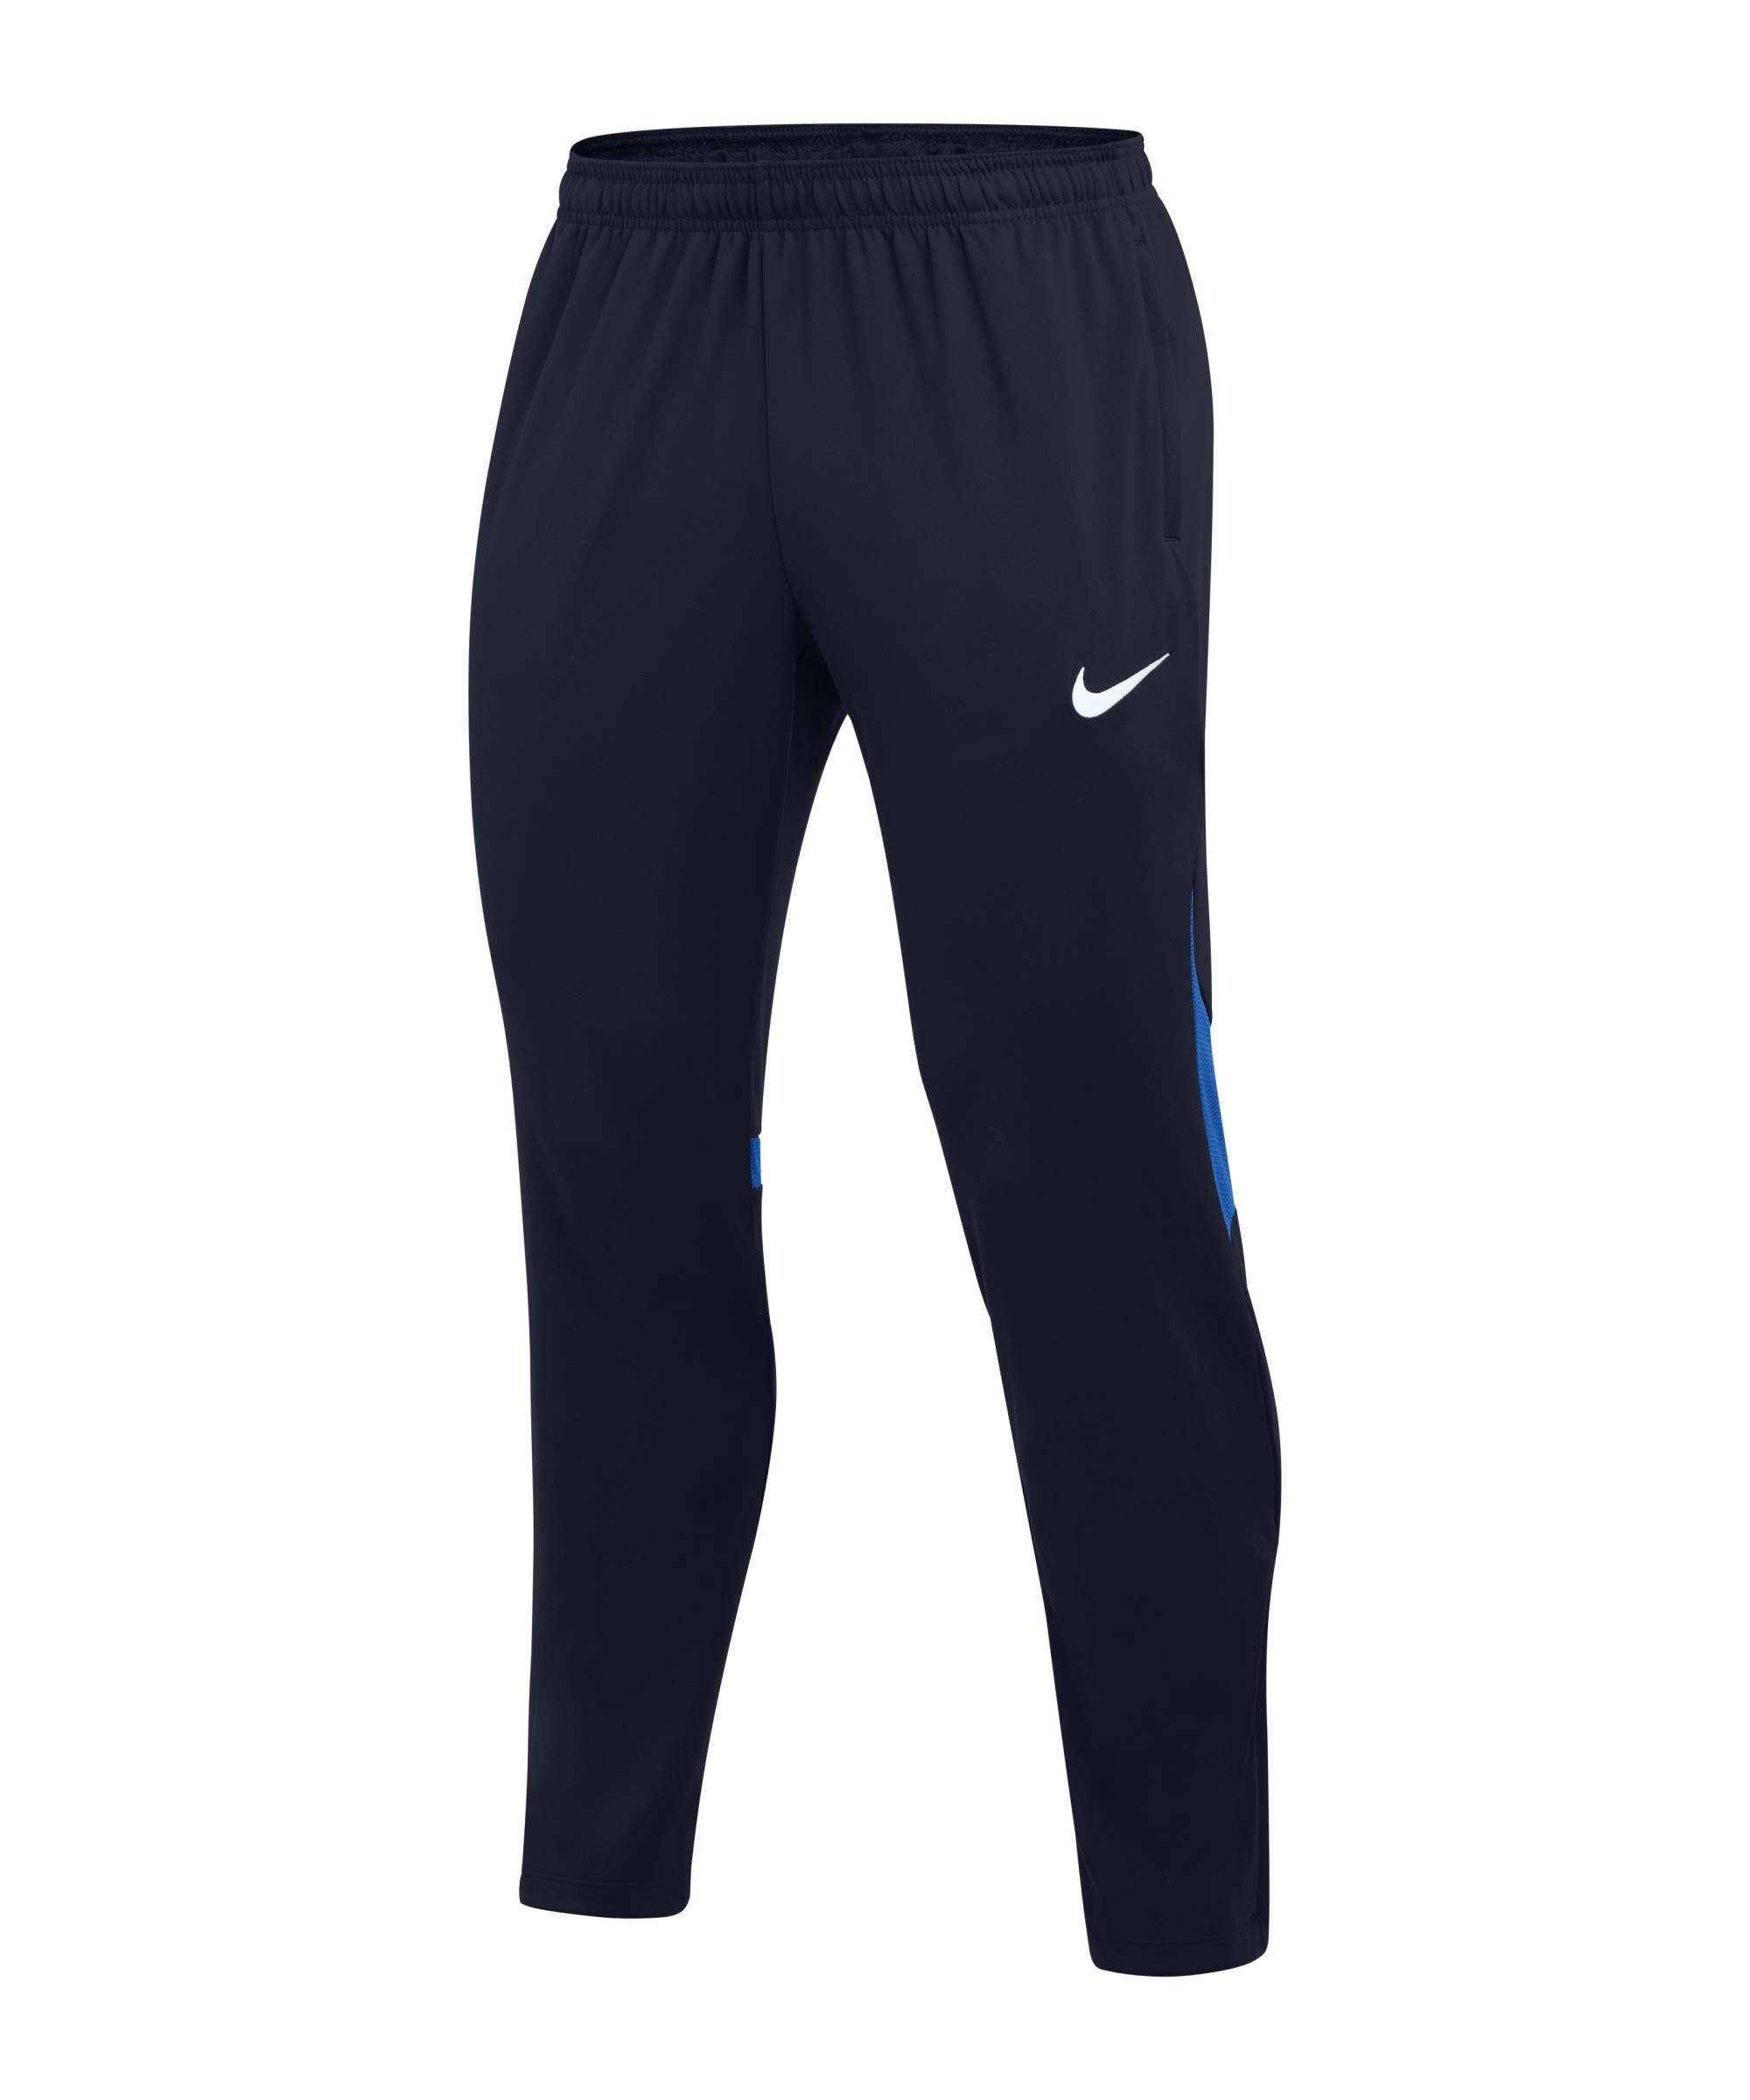 Nike Academy Pro Trainingshose Blau Weiss F451 - blau